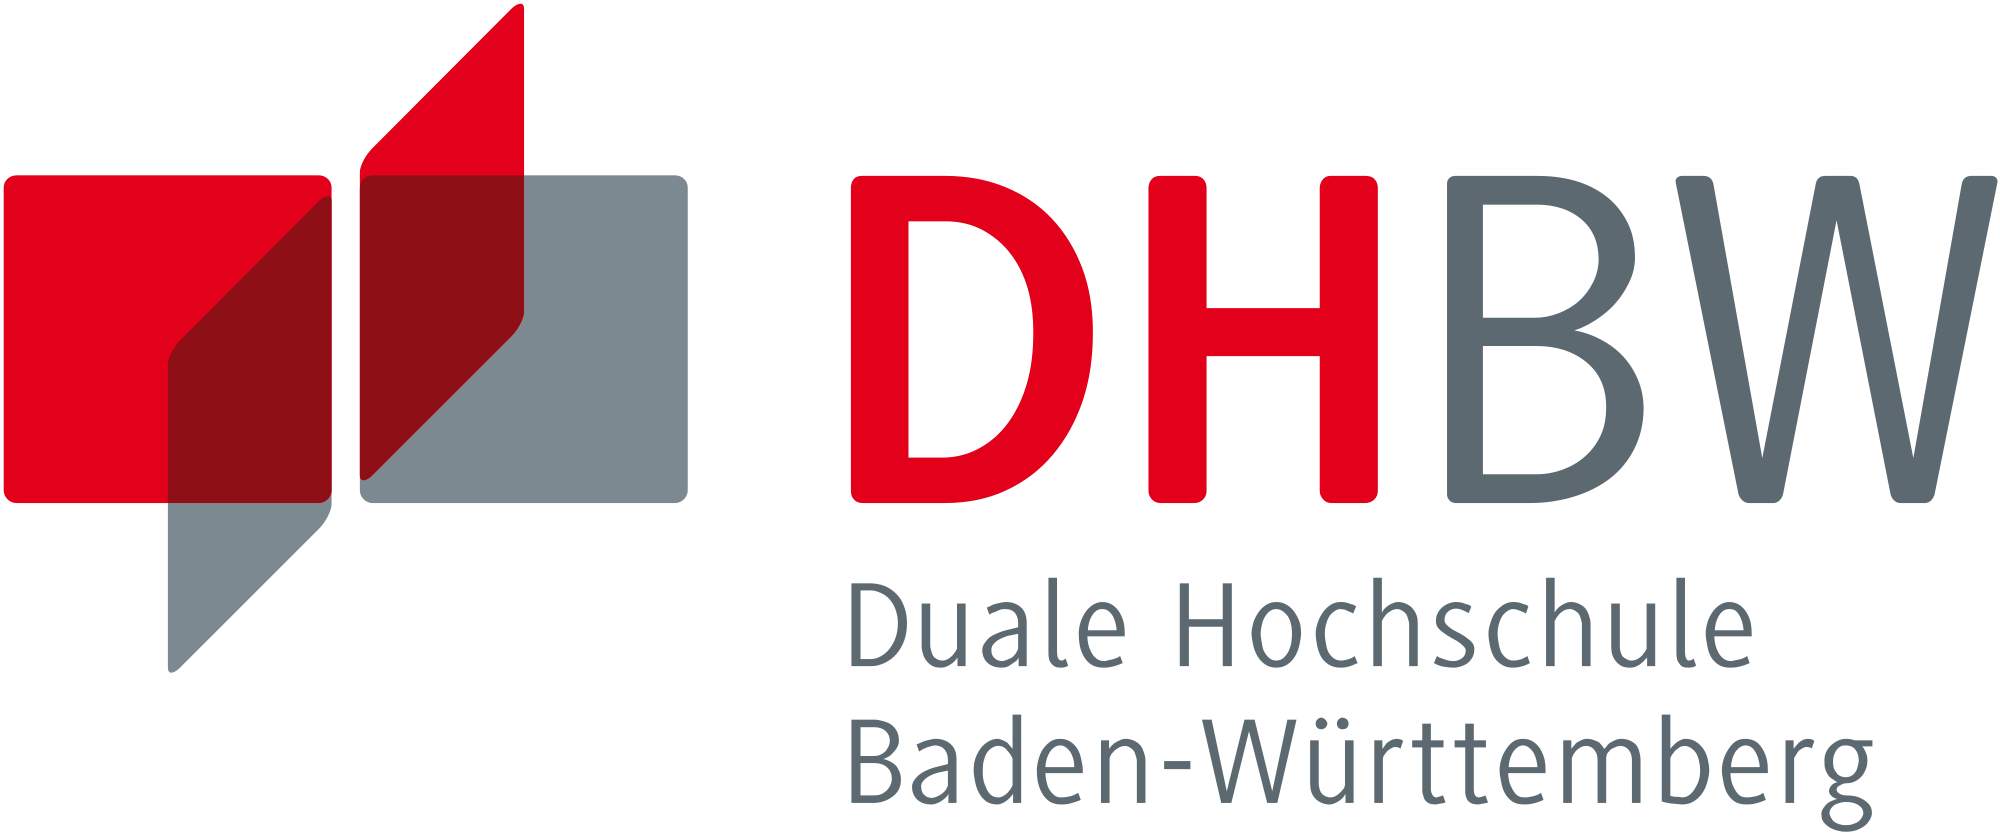 2000px-DHBW-Logo.svg